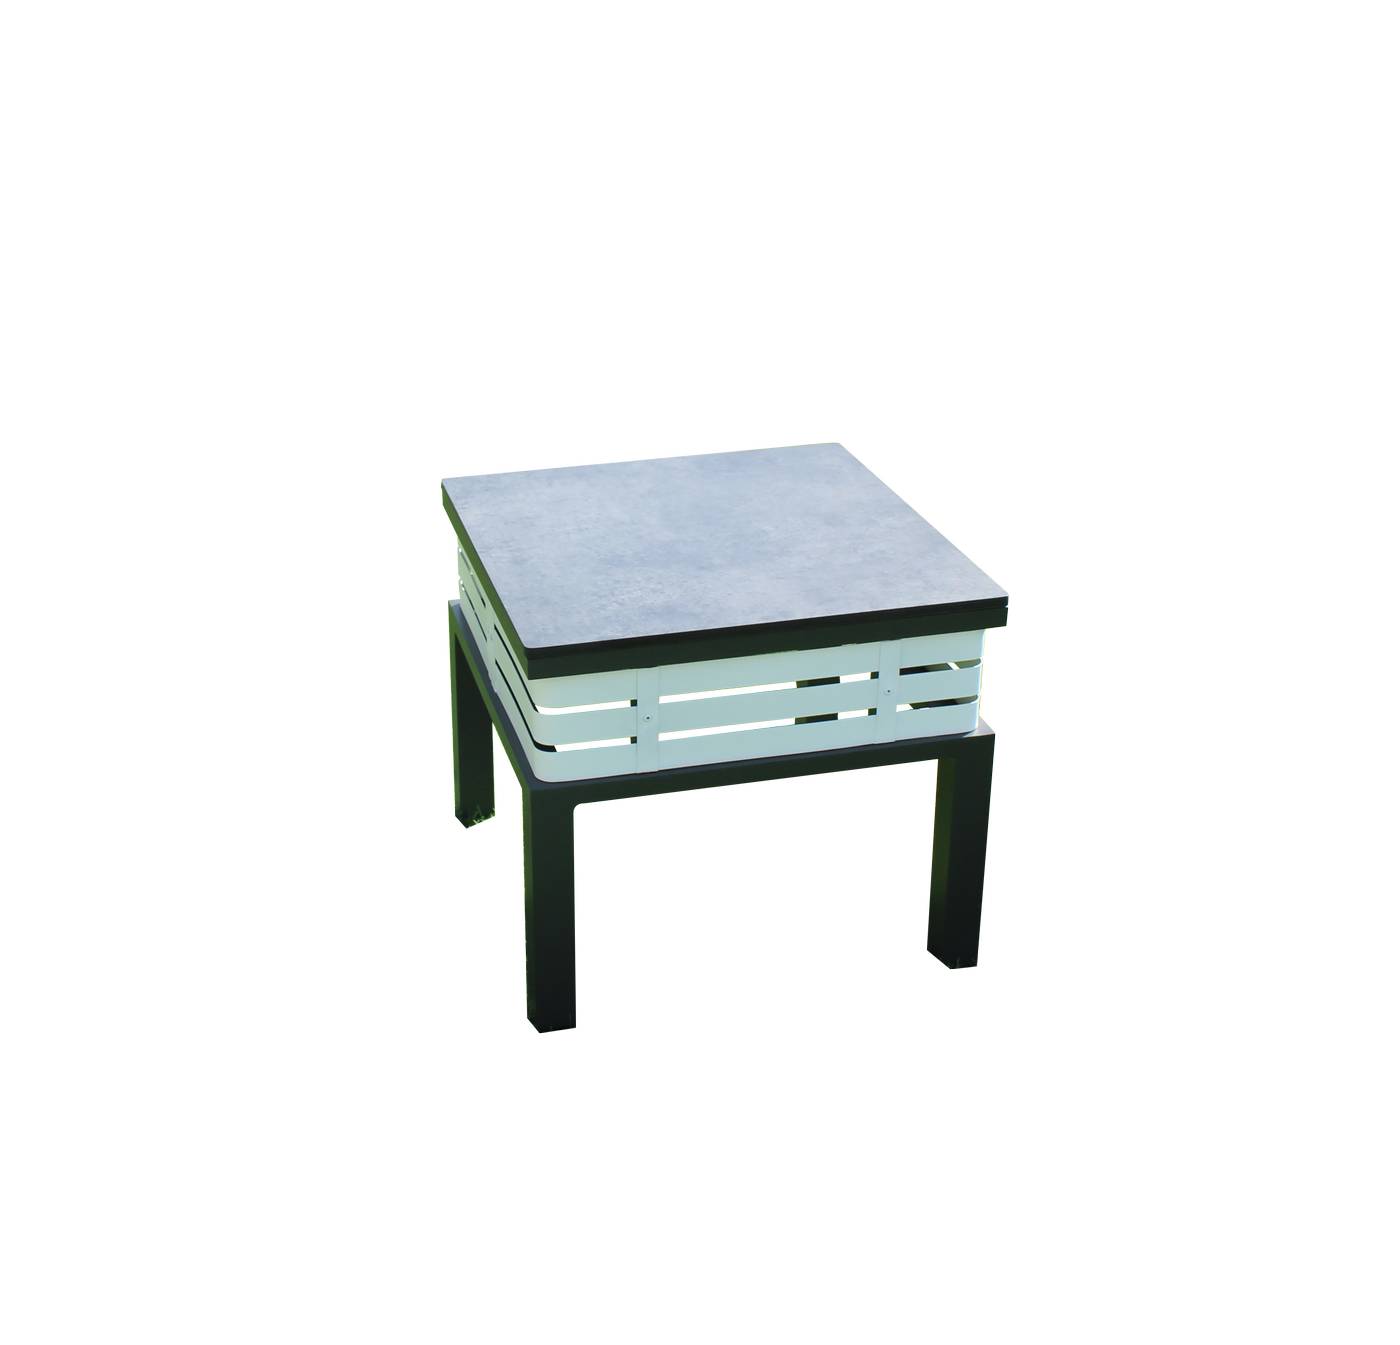 Exclusiva mesa auxiliar cuadrada, de aluminio bicolor, con tablero HPL de 50 cm.